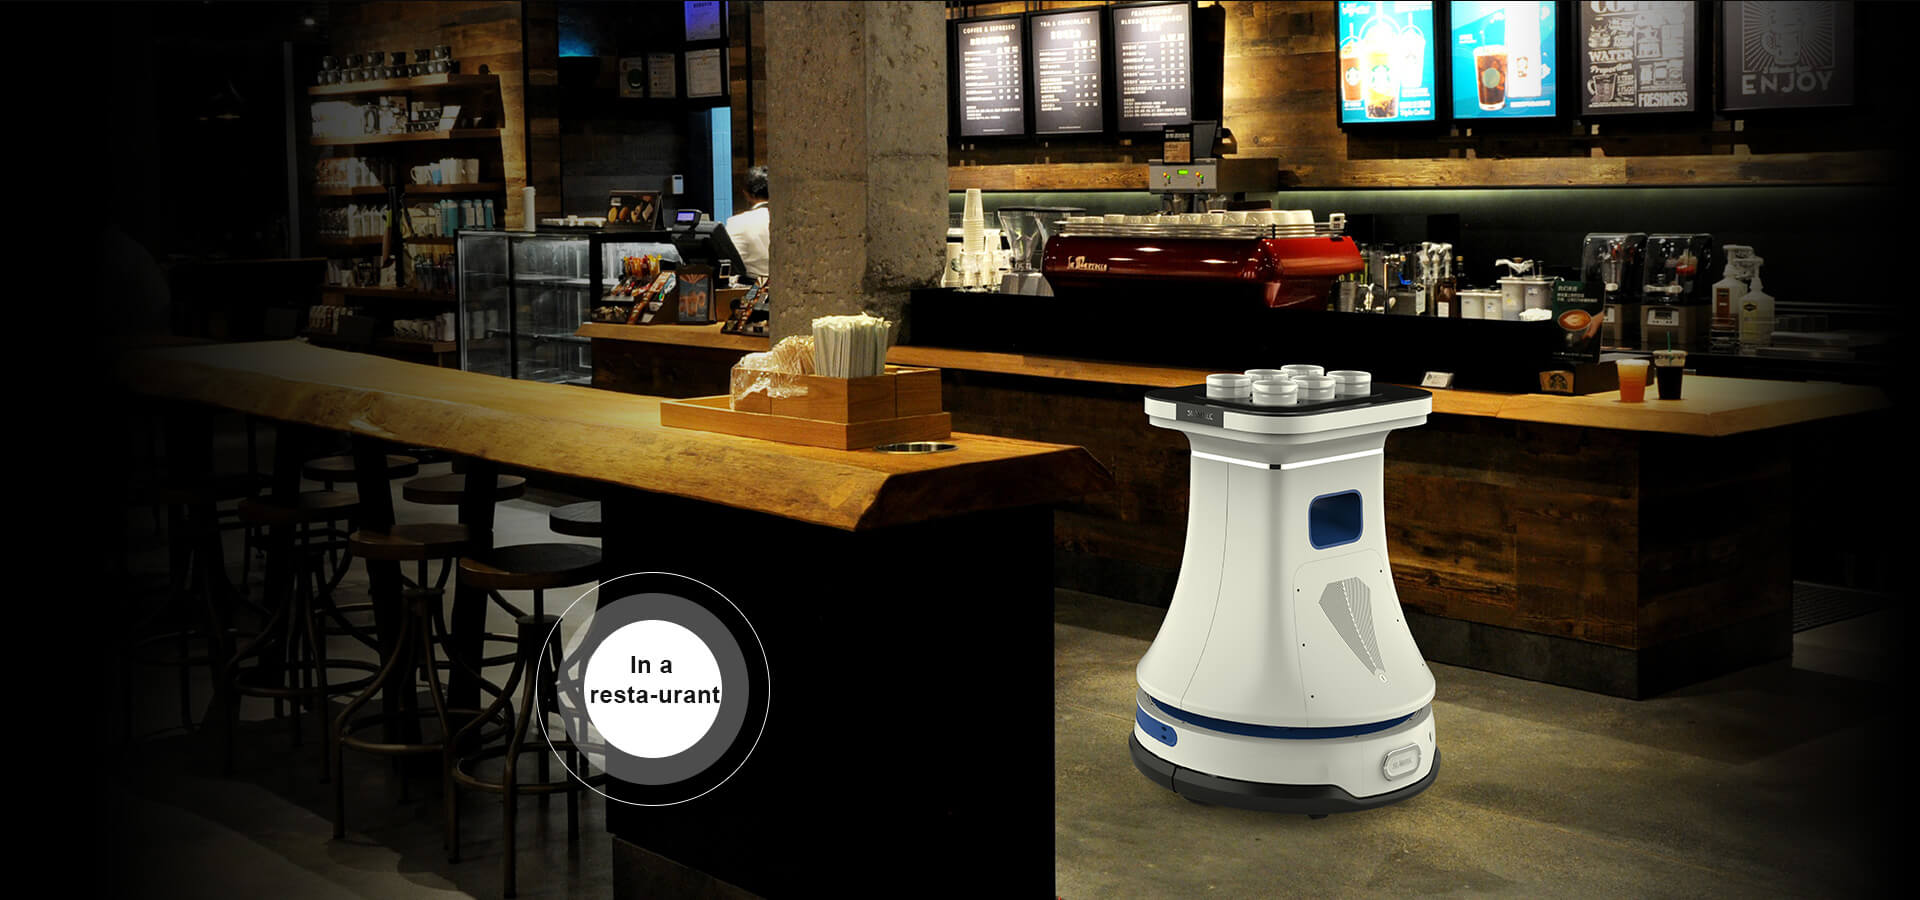 SLAMTEC service robot platform be used in restaurants